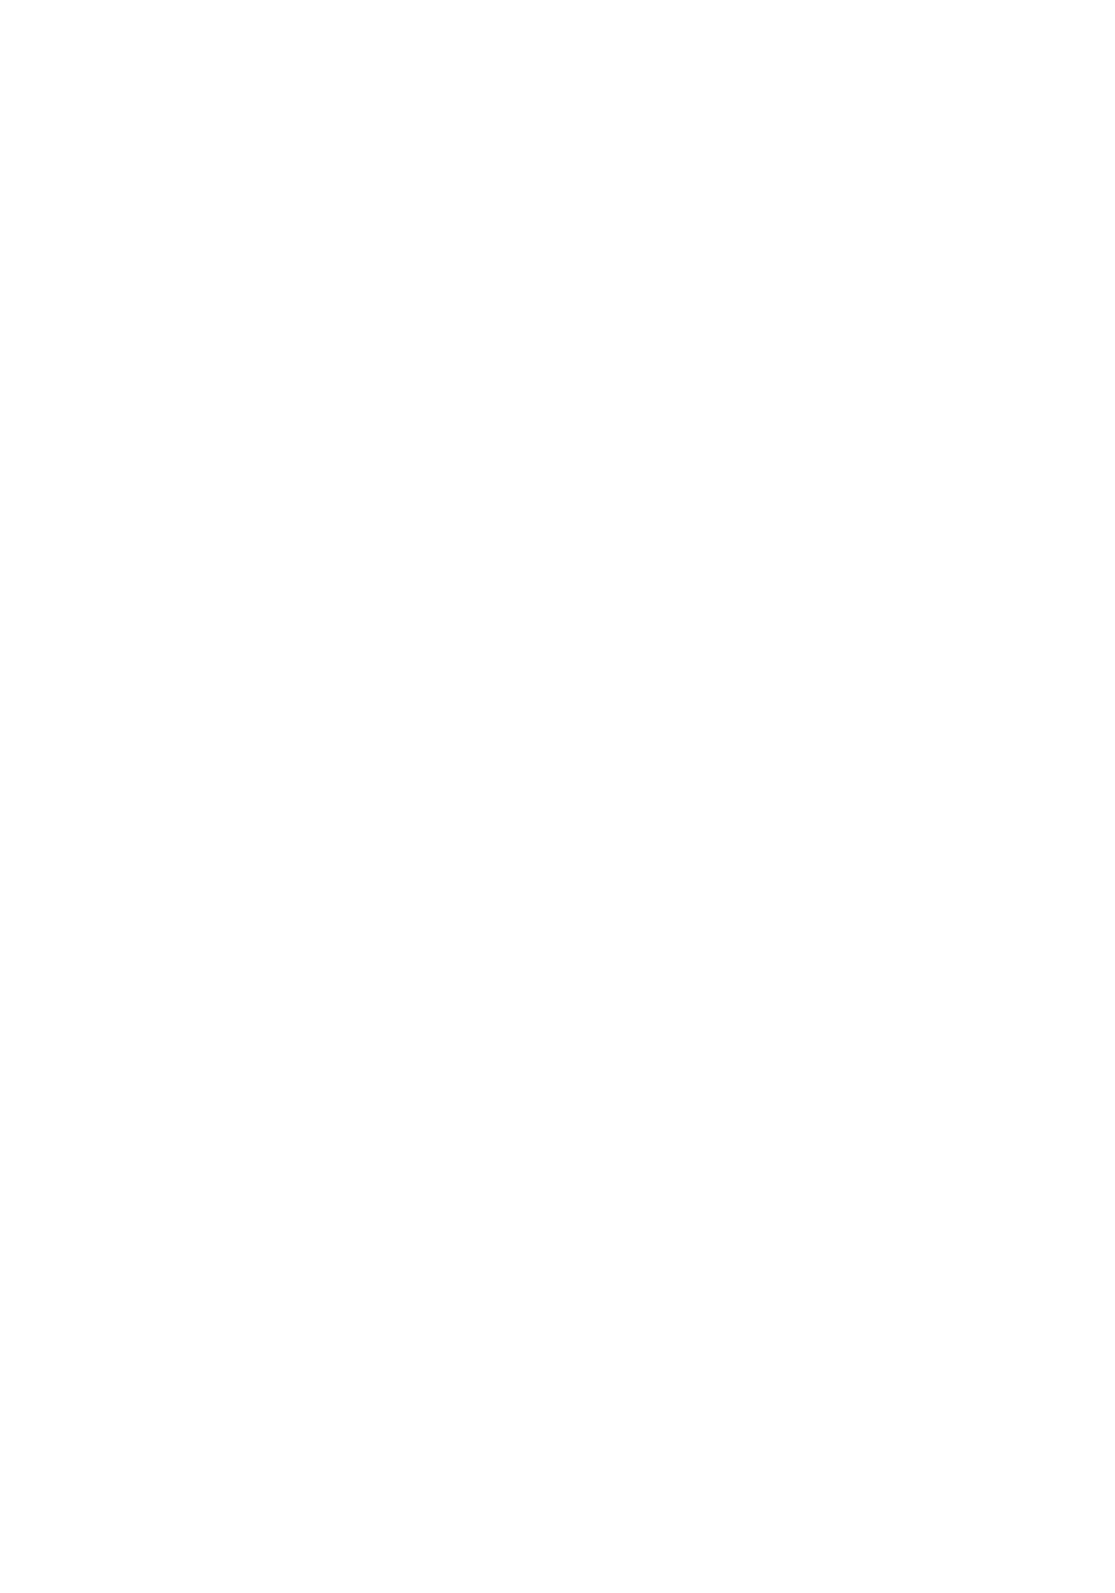 Al-Saif Stores for Development & Investment logo pour fonds sombres (PNG transparent)